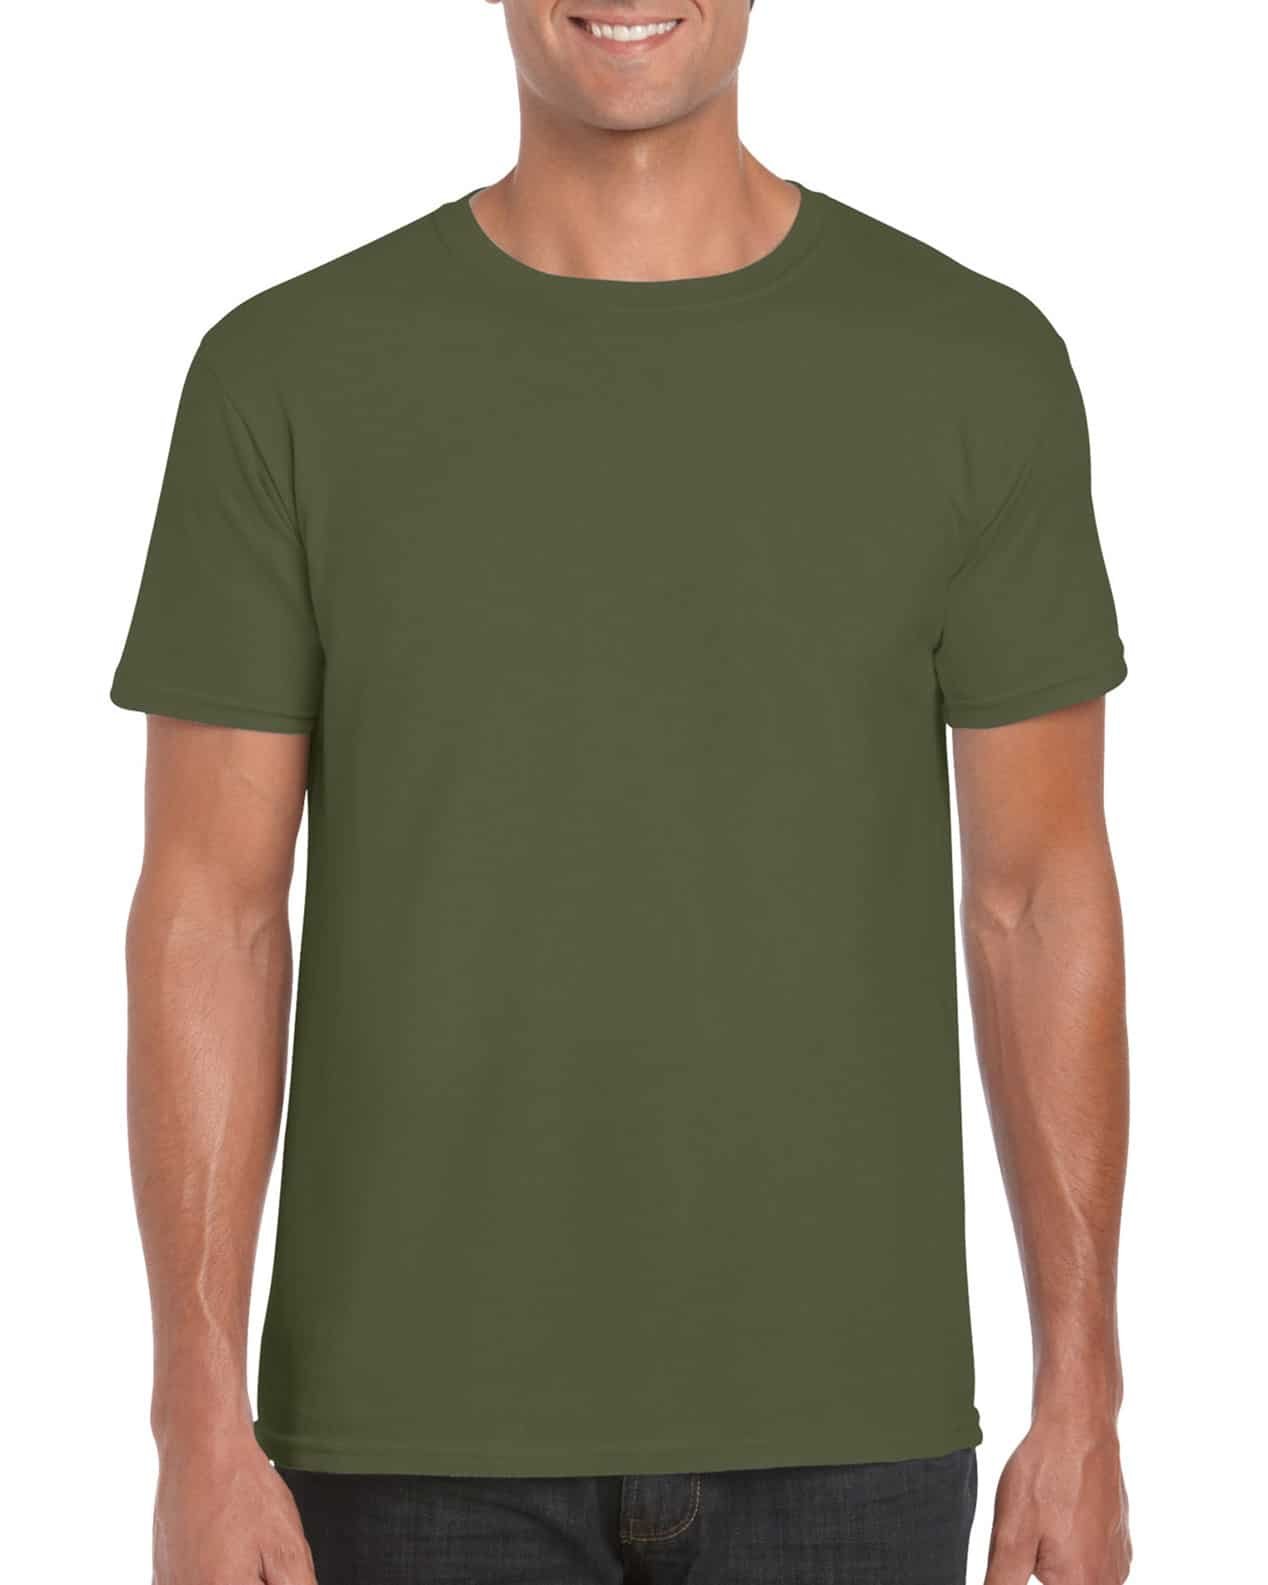 Manía inteligencia Aislar Camiseta Hombre cuello redondo verde militar | PstyleC